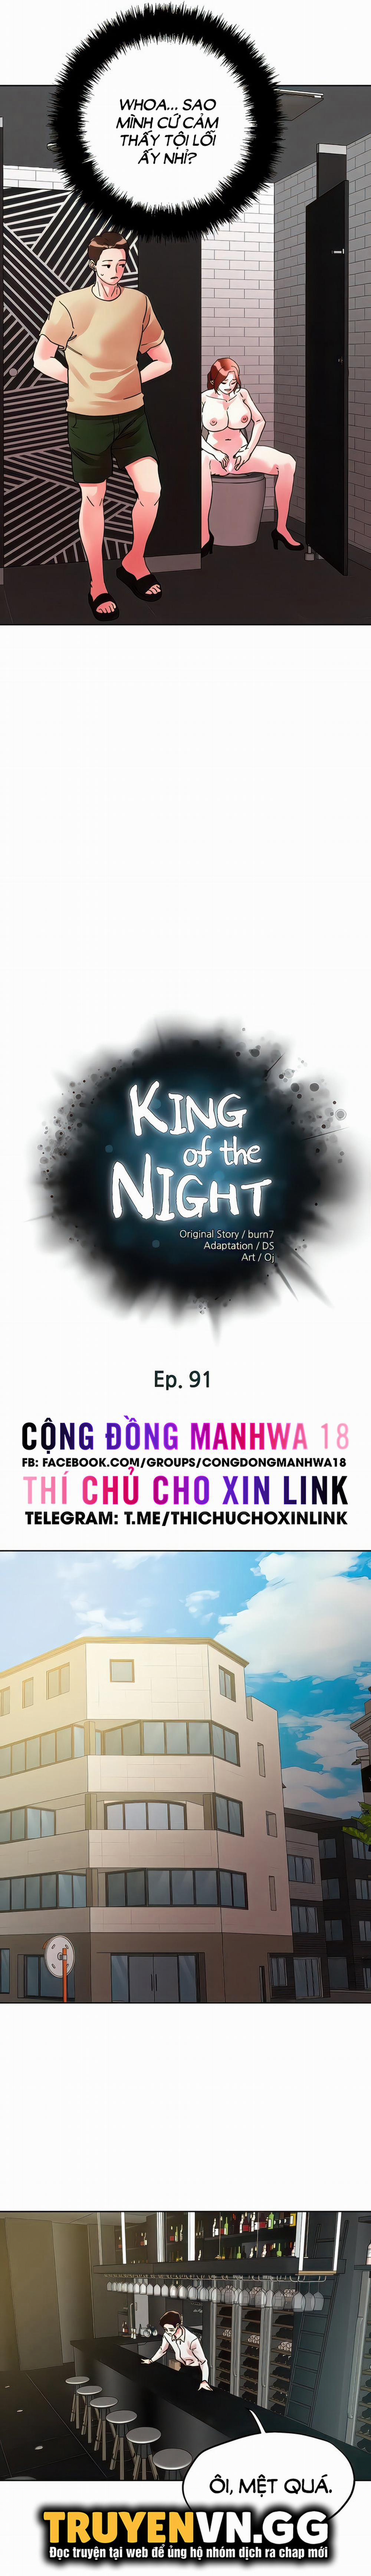 King Of The Night Chương 91 Trang 4